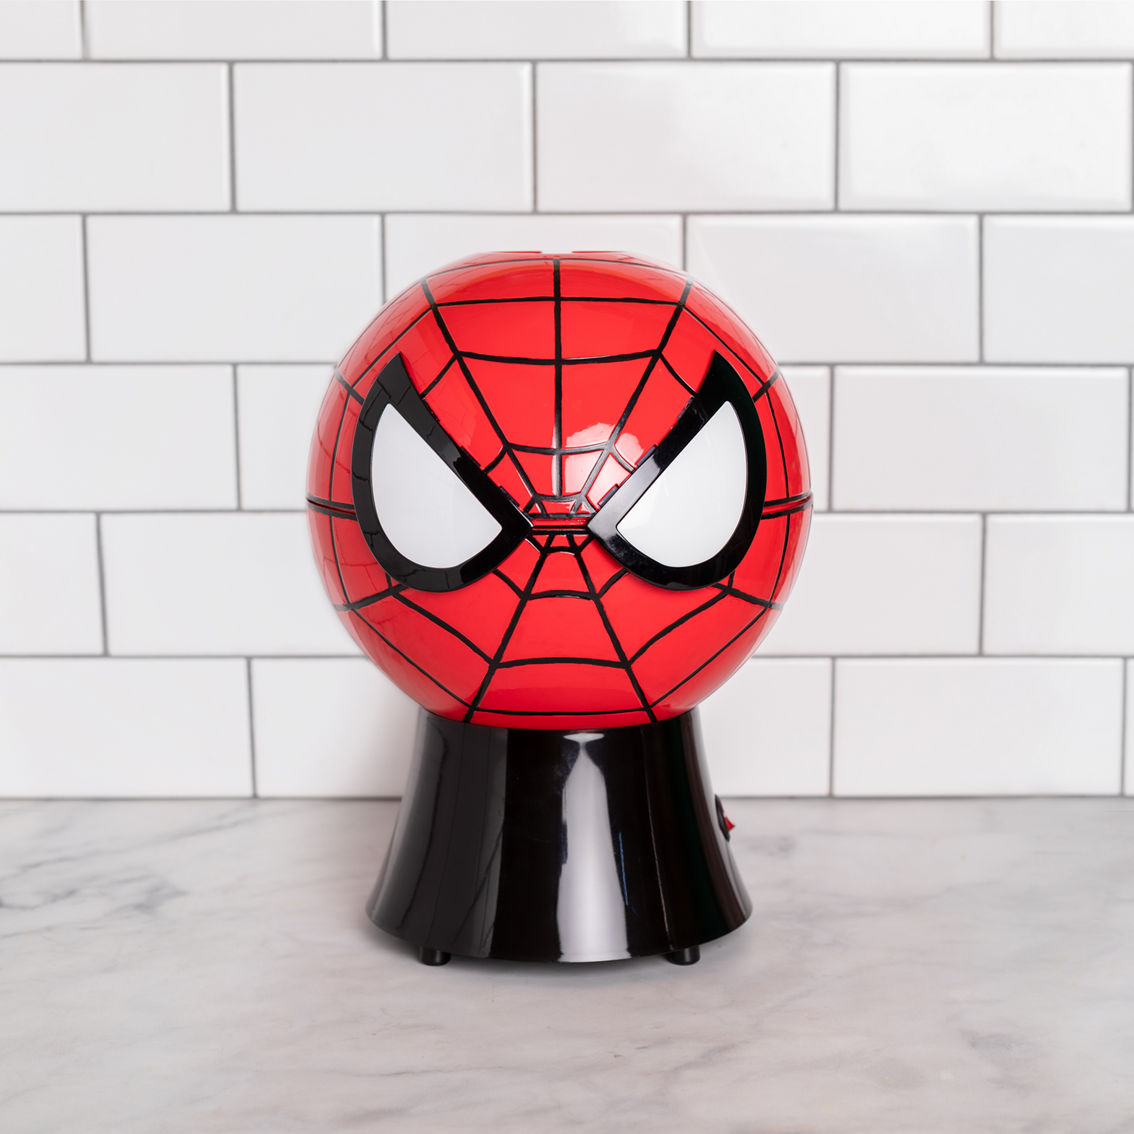 Uncanny Brands Marvel Spider-Man Popcorn Maker - Image 4 of 9